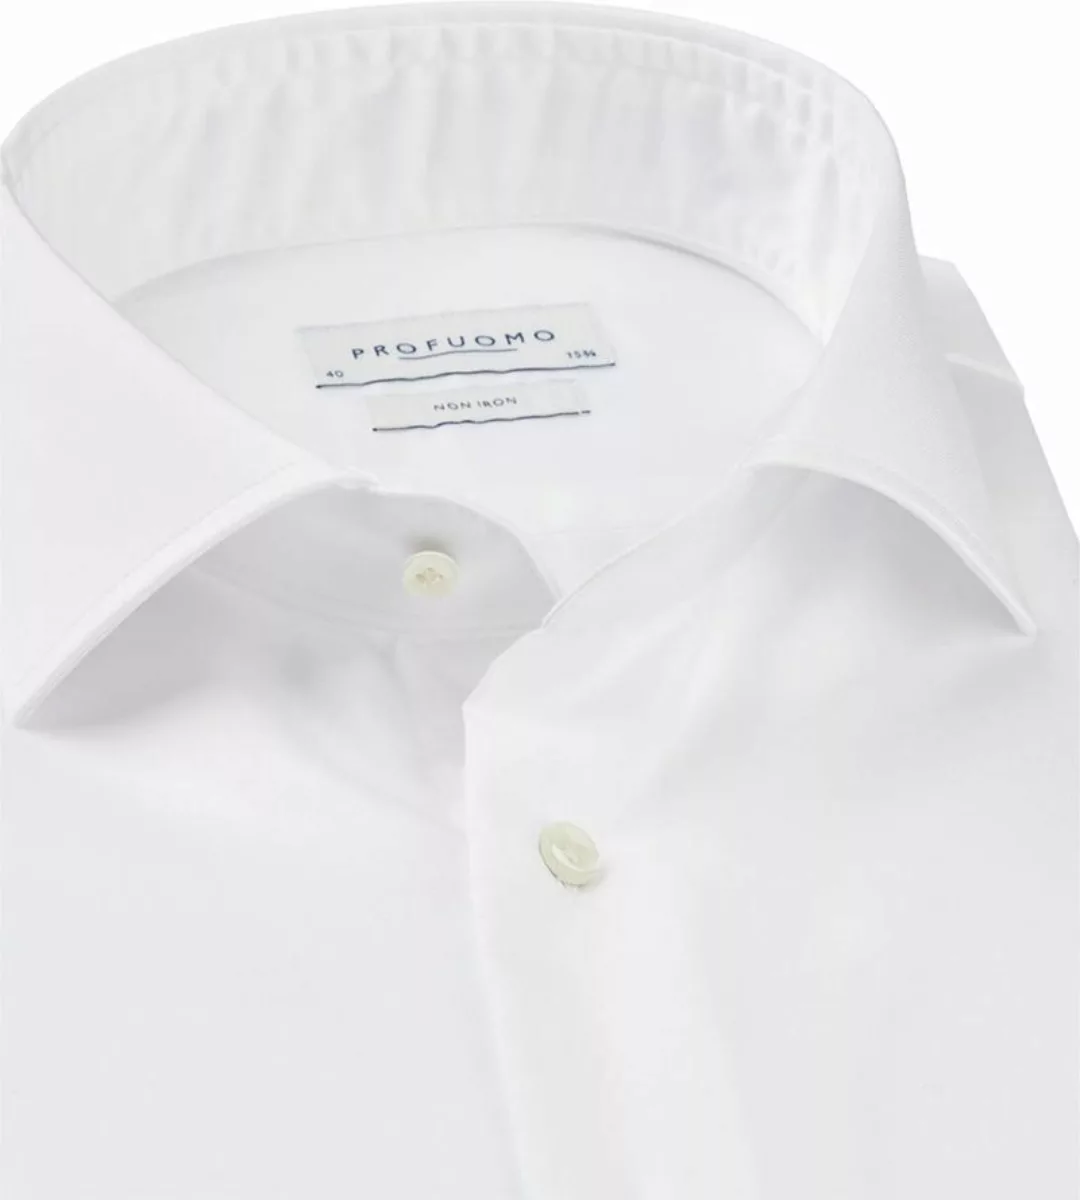 Profuomo Slim Fit Hemd Cutaway Weiß - Größe 43 günstig online kaufen